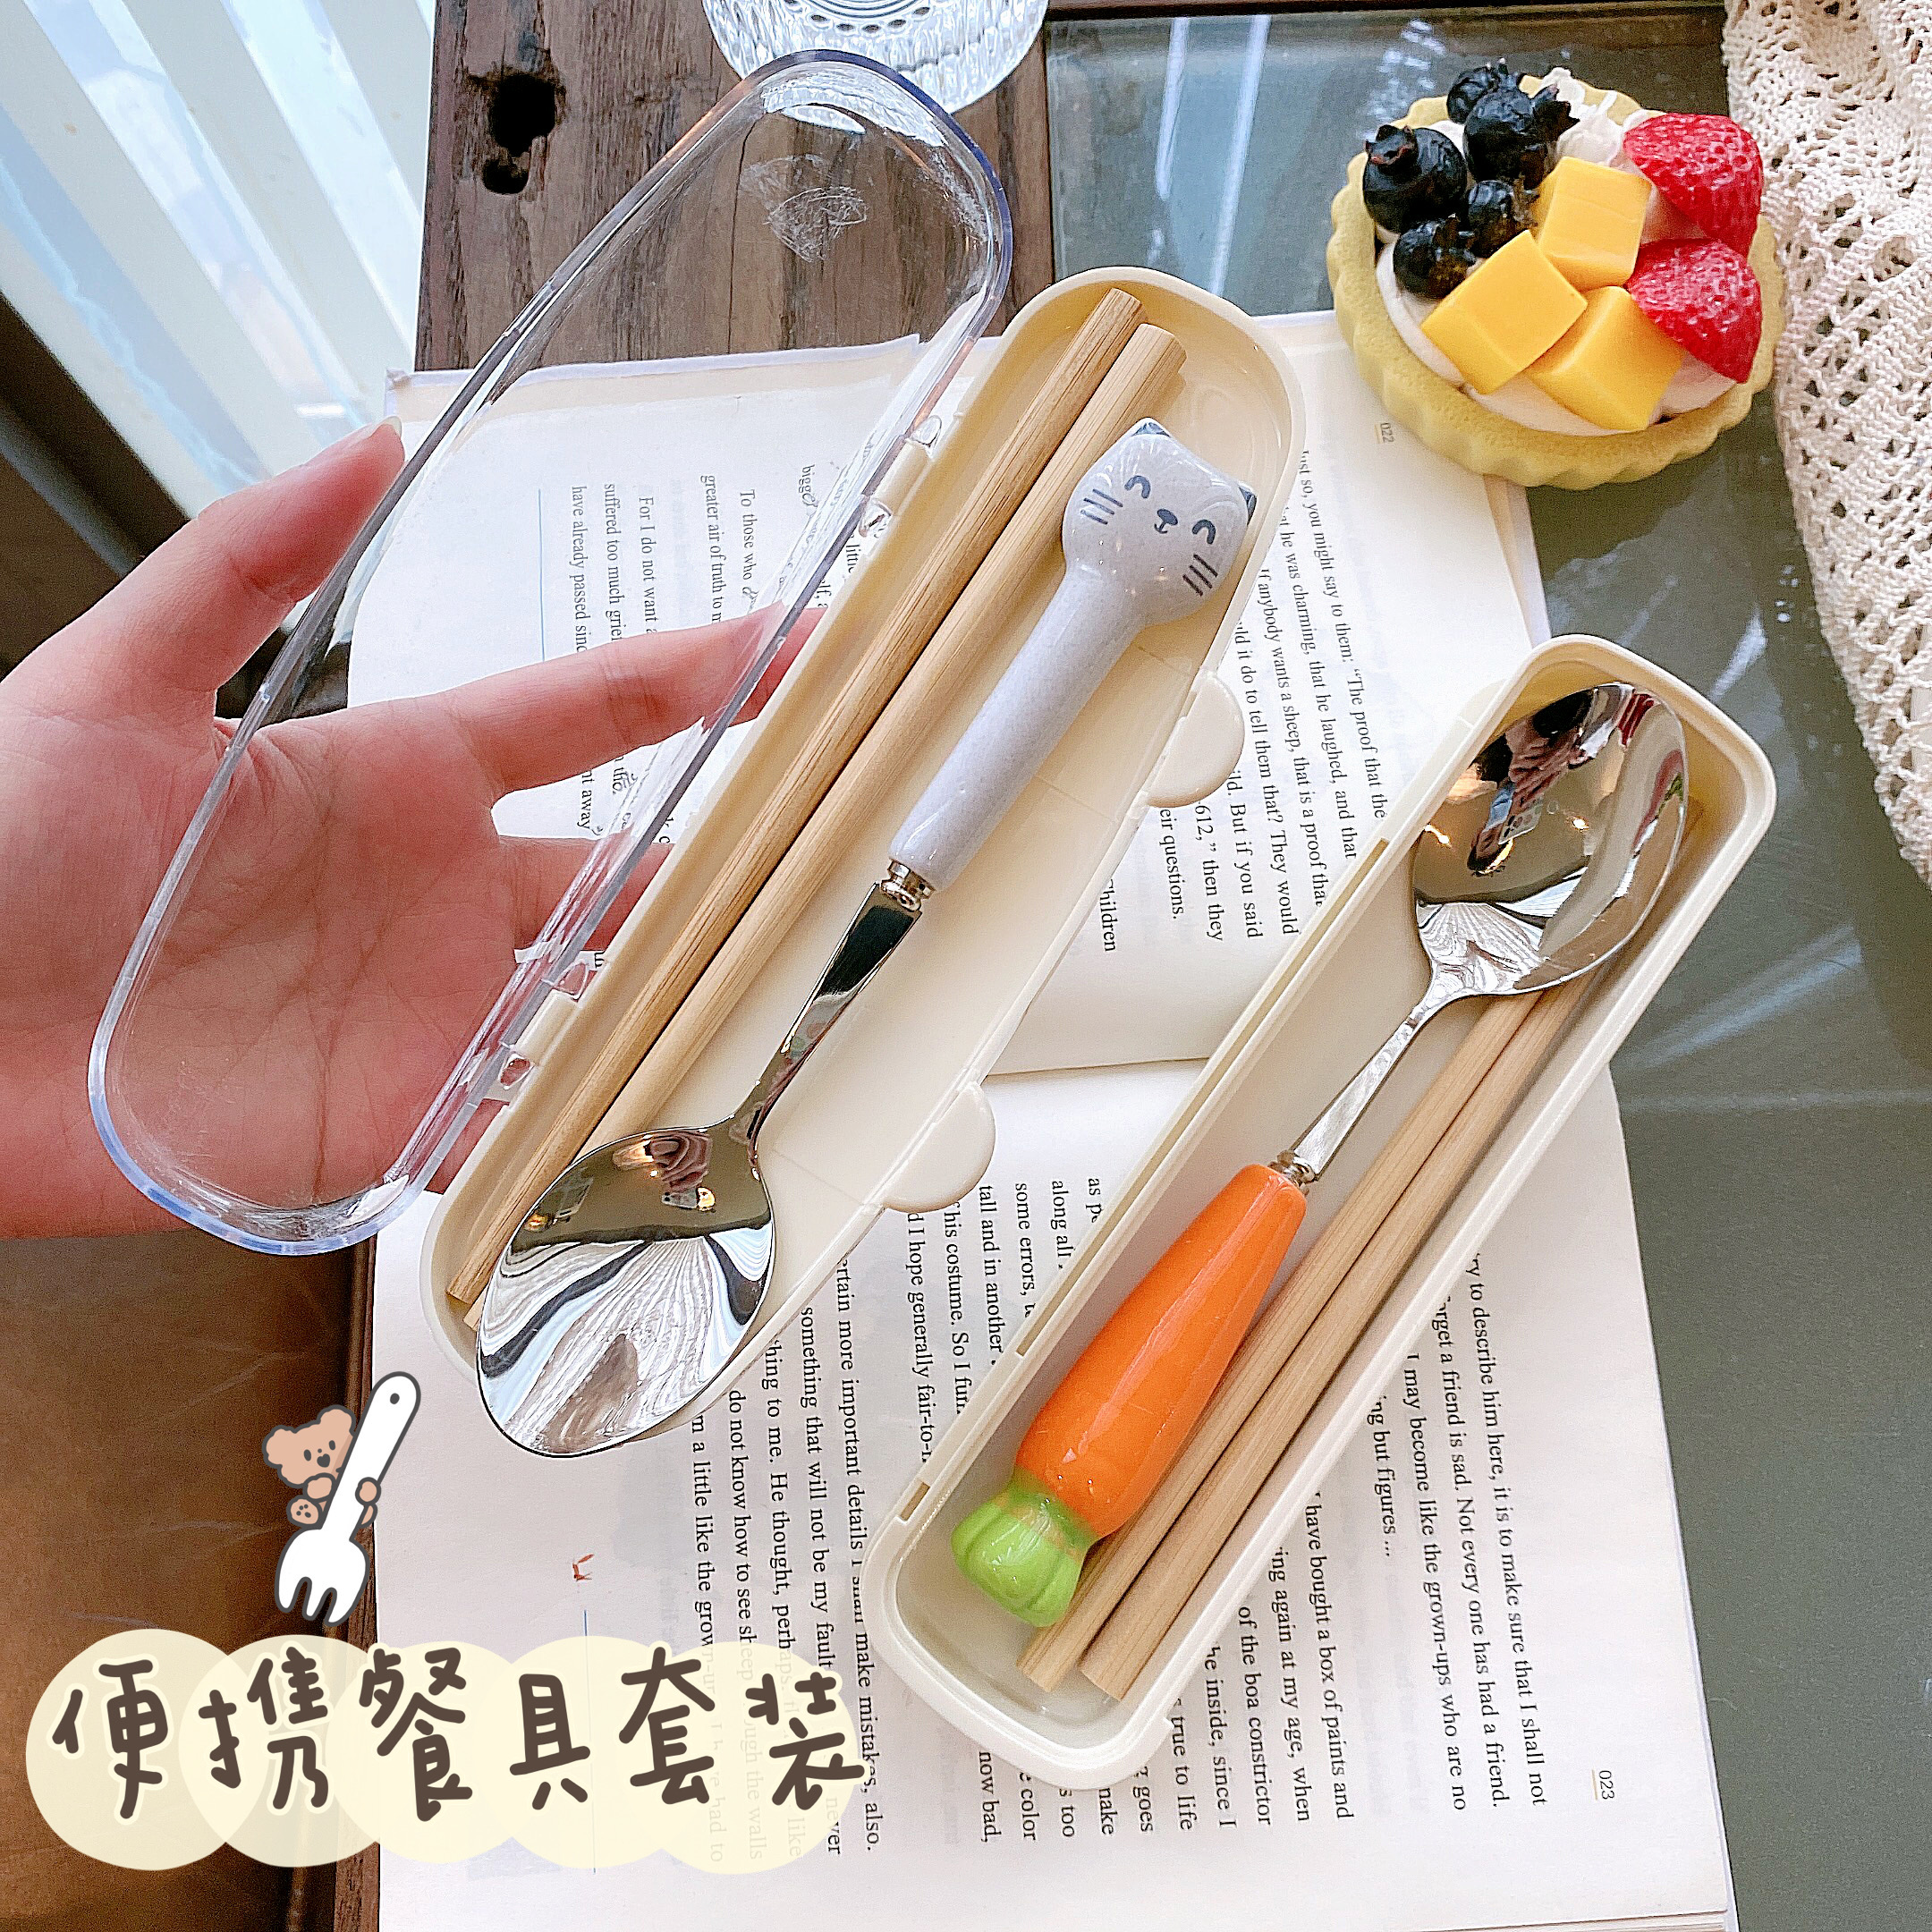 创意不锈钢餐具盒筷子勺子套装单人装儿童可爱学生一人用便携餐盒